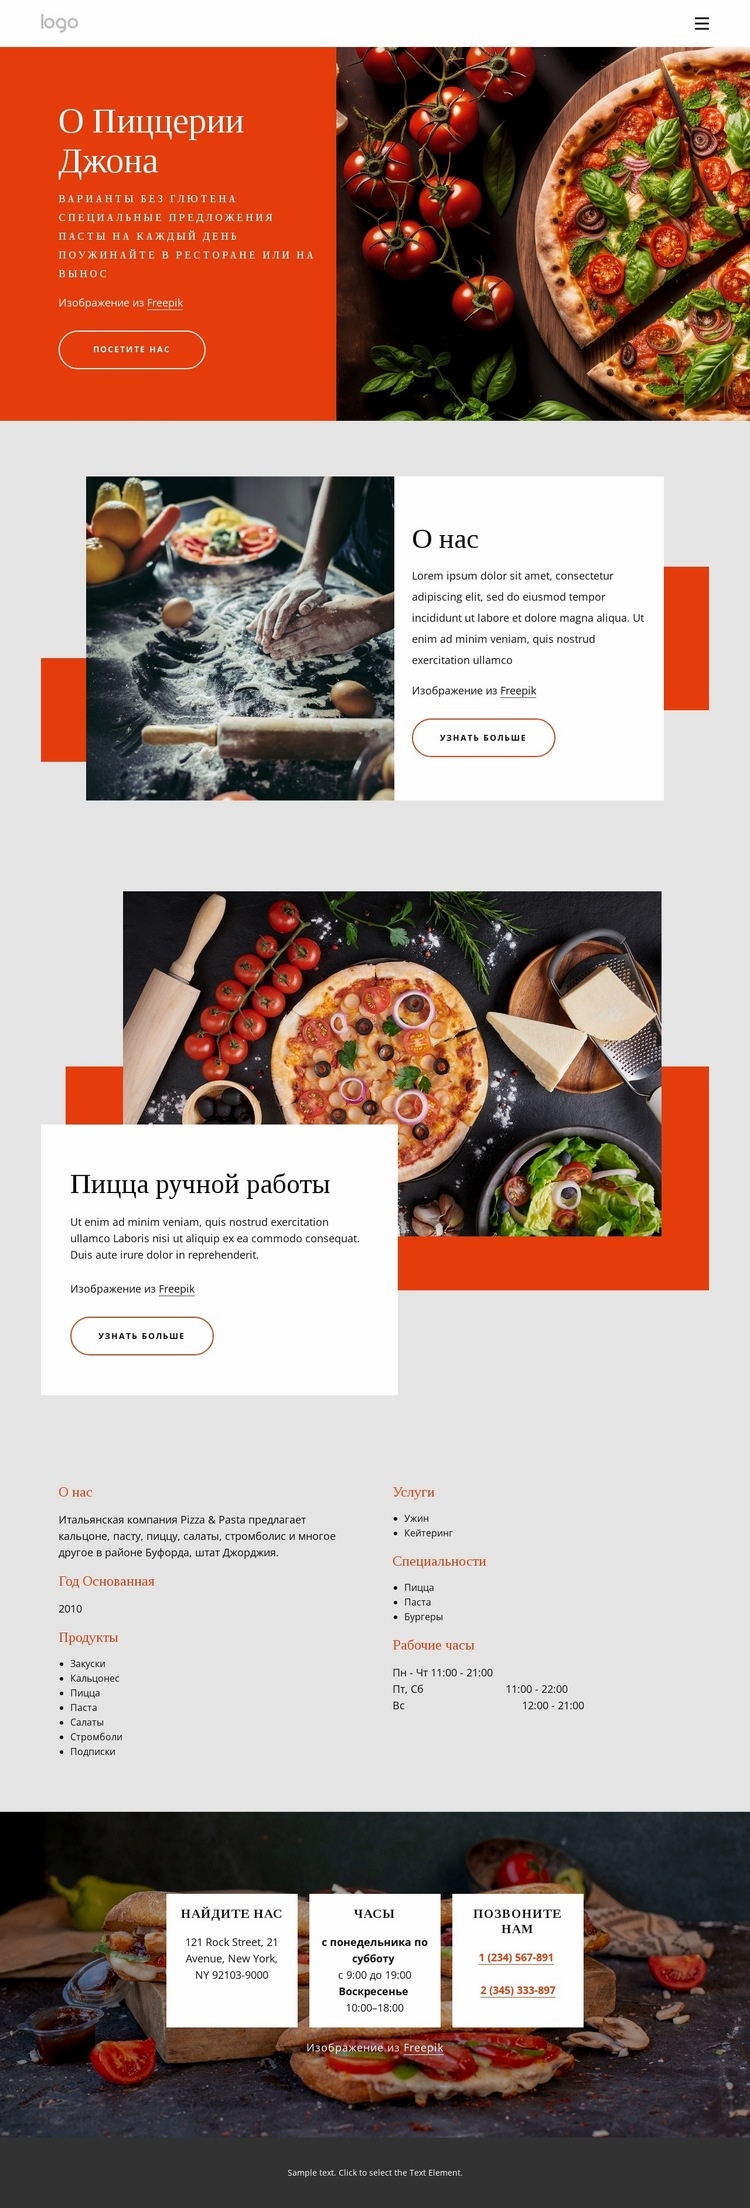 О нашей пиццерии Дизайн сайта